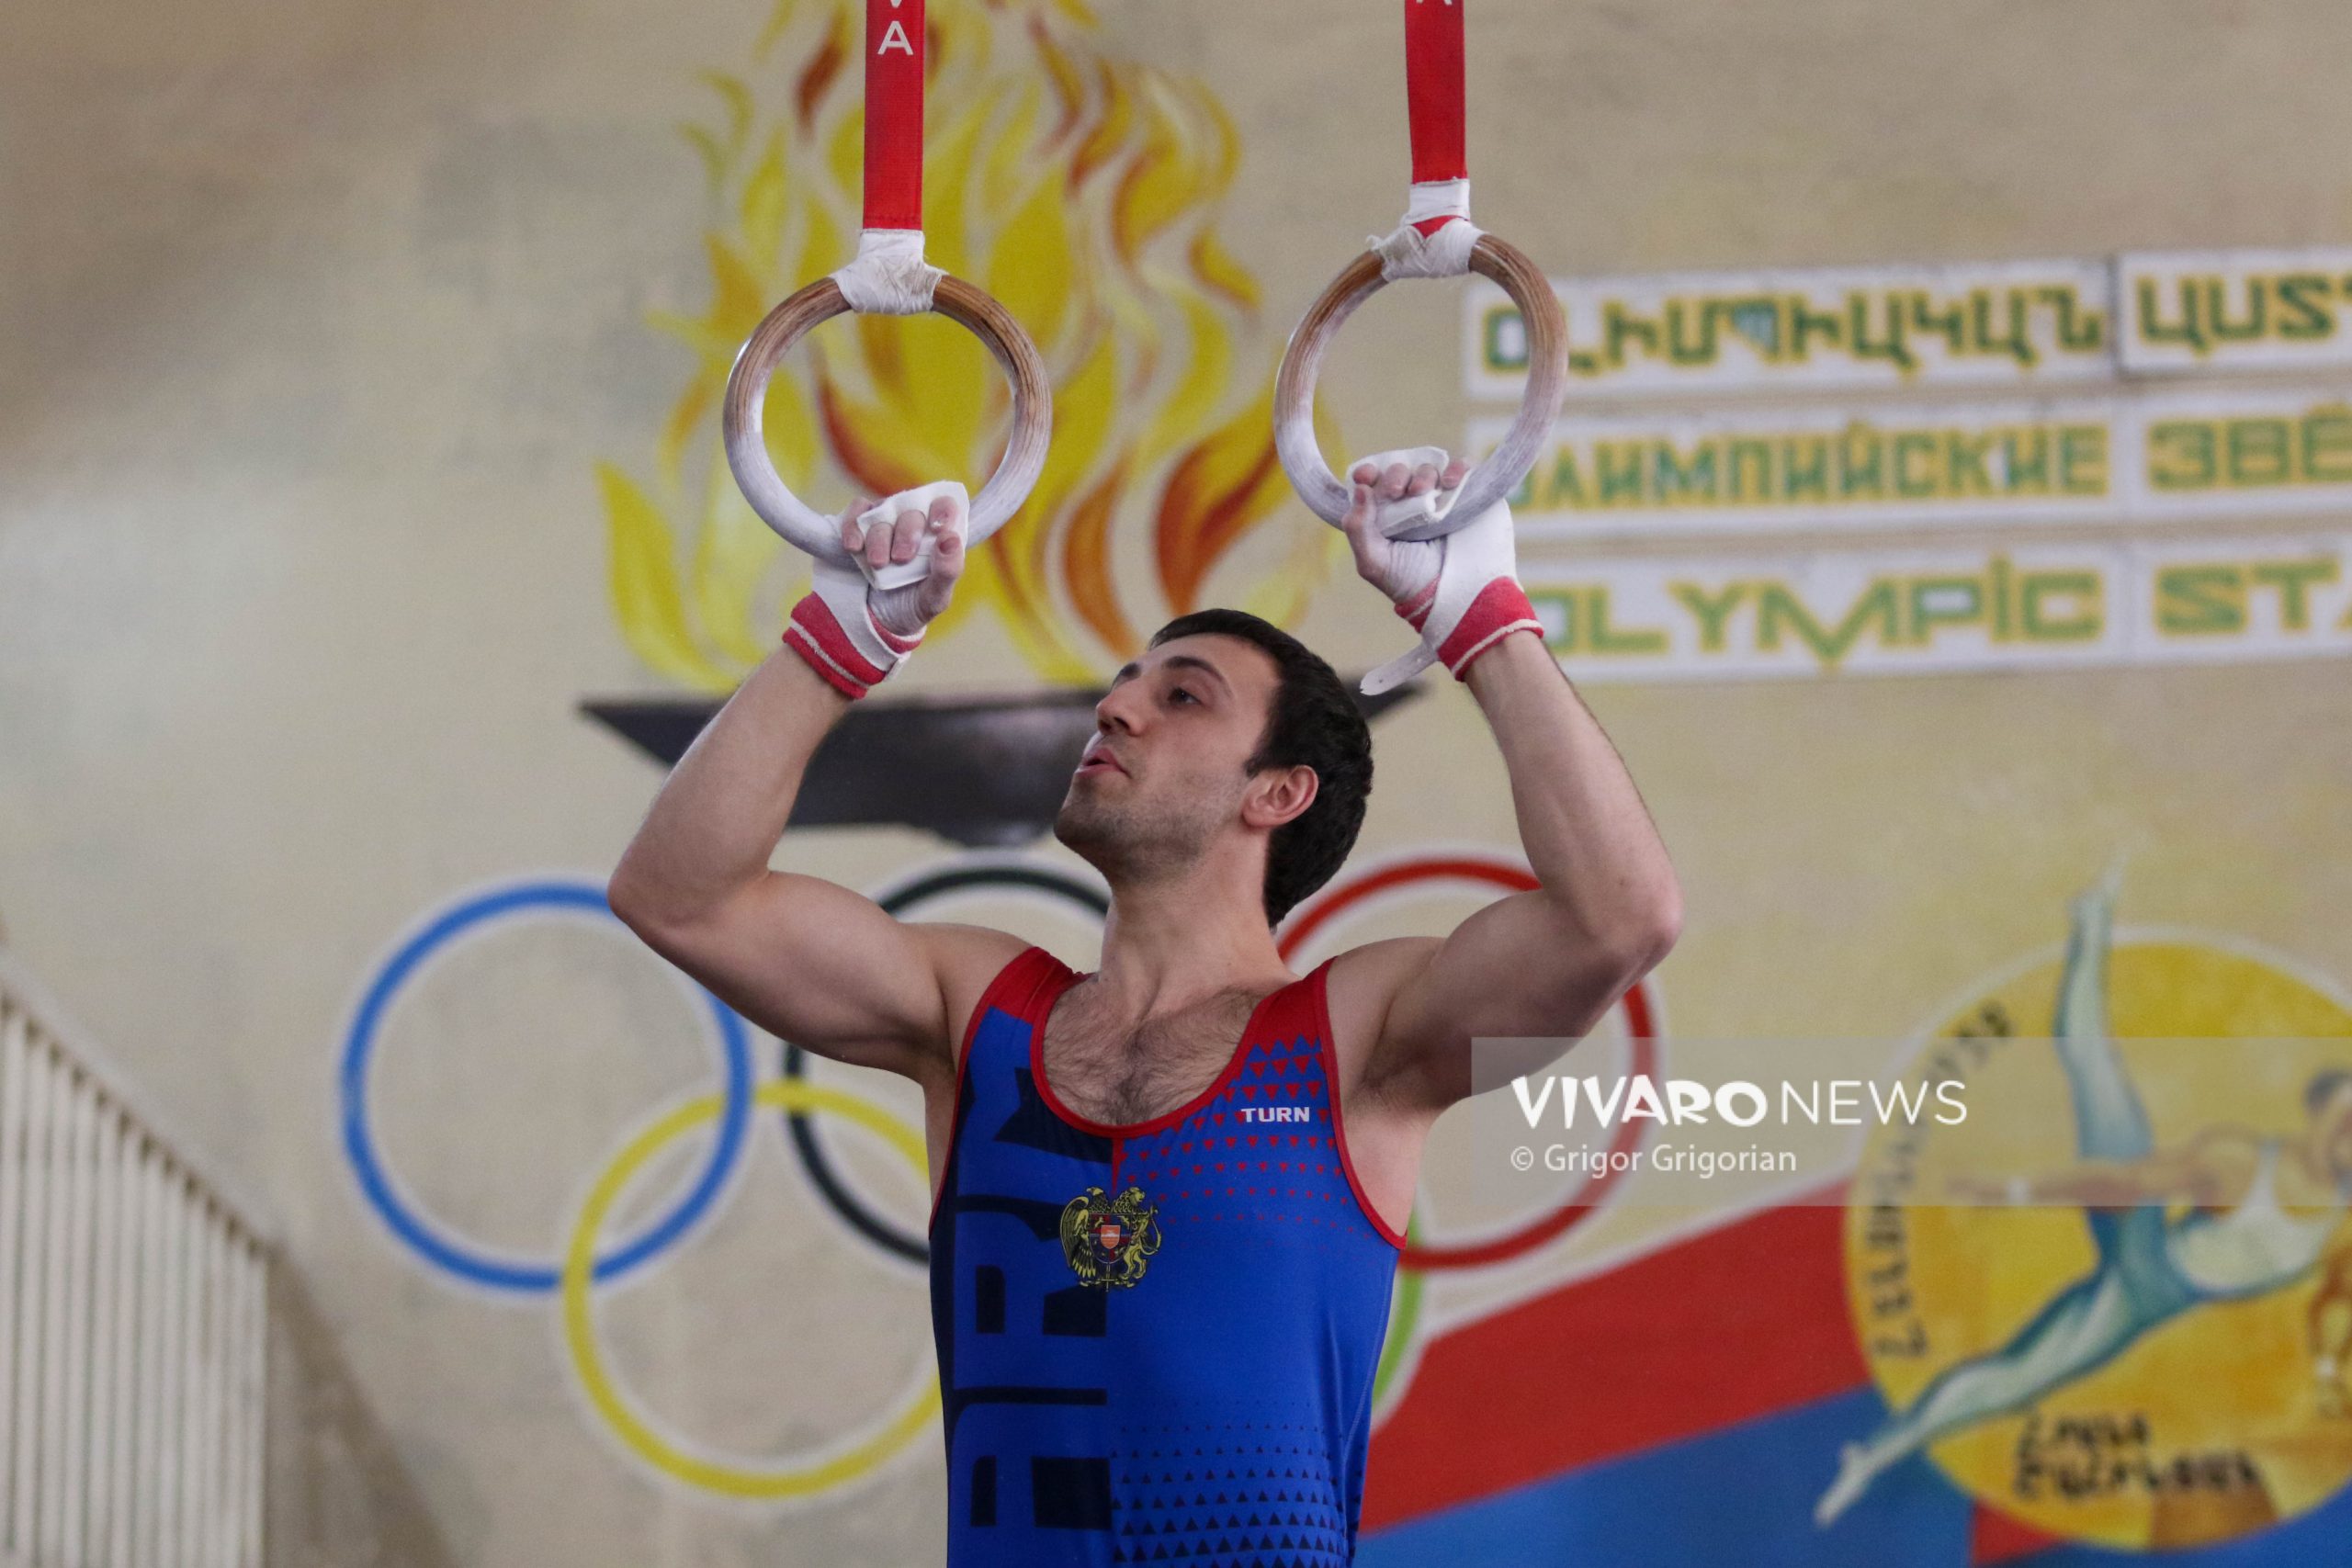 045A4277 scaled - Մարմնամարզության Հայաստանի առաջնության մրցումային երկրորդ օրը՝ VNews-ի ֆոտոշարքում